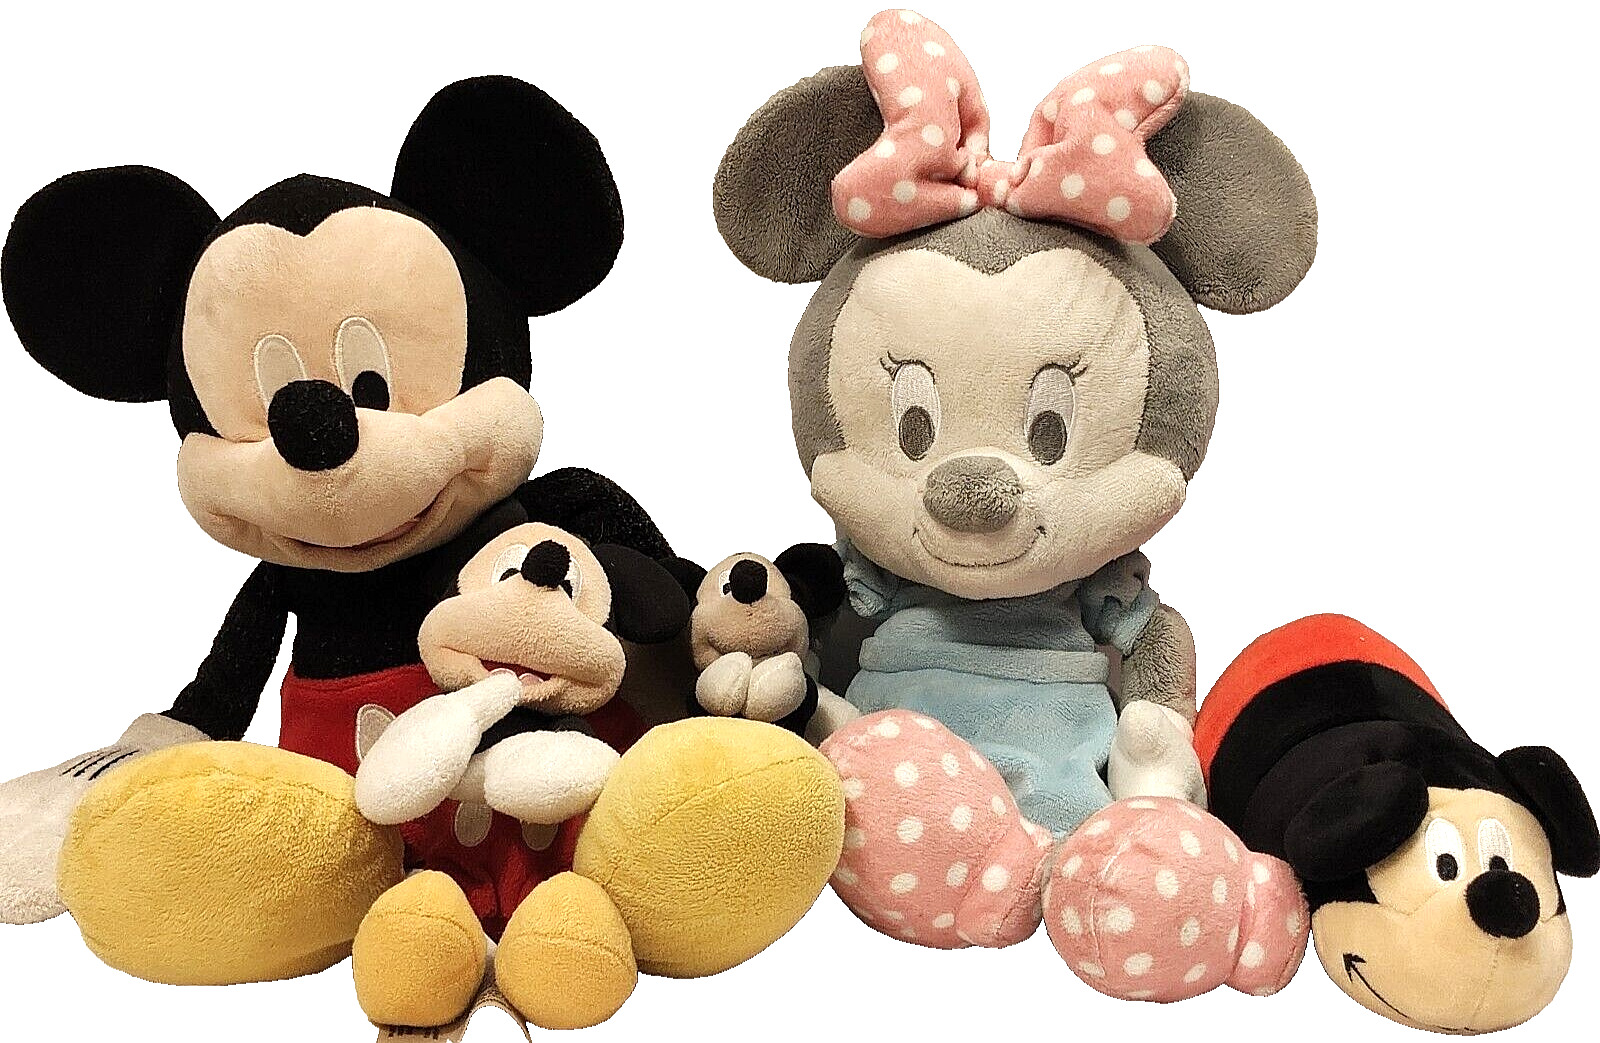 Mickey Mouse W/ Minnie Plush Lot of 5 Various Sizes Vintage Disney/Hallmark